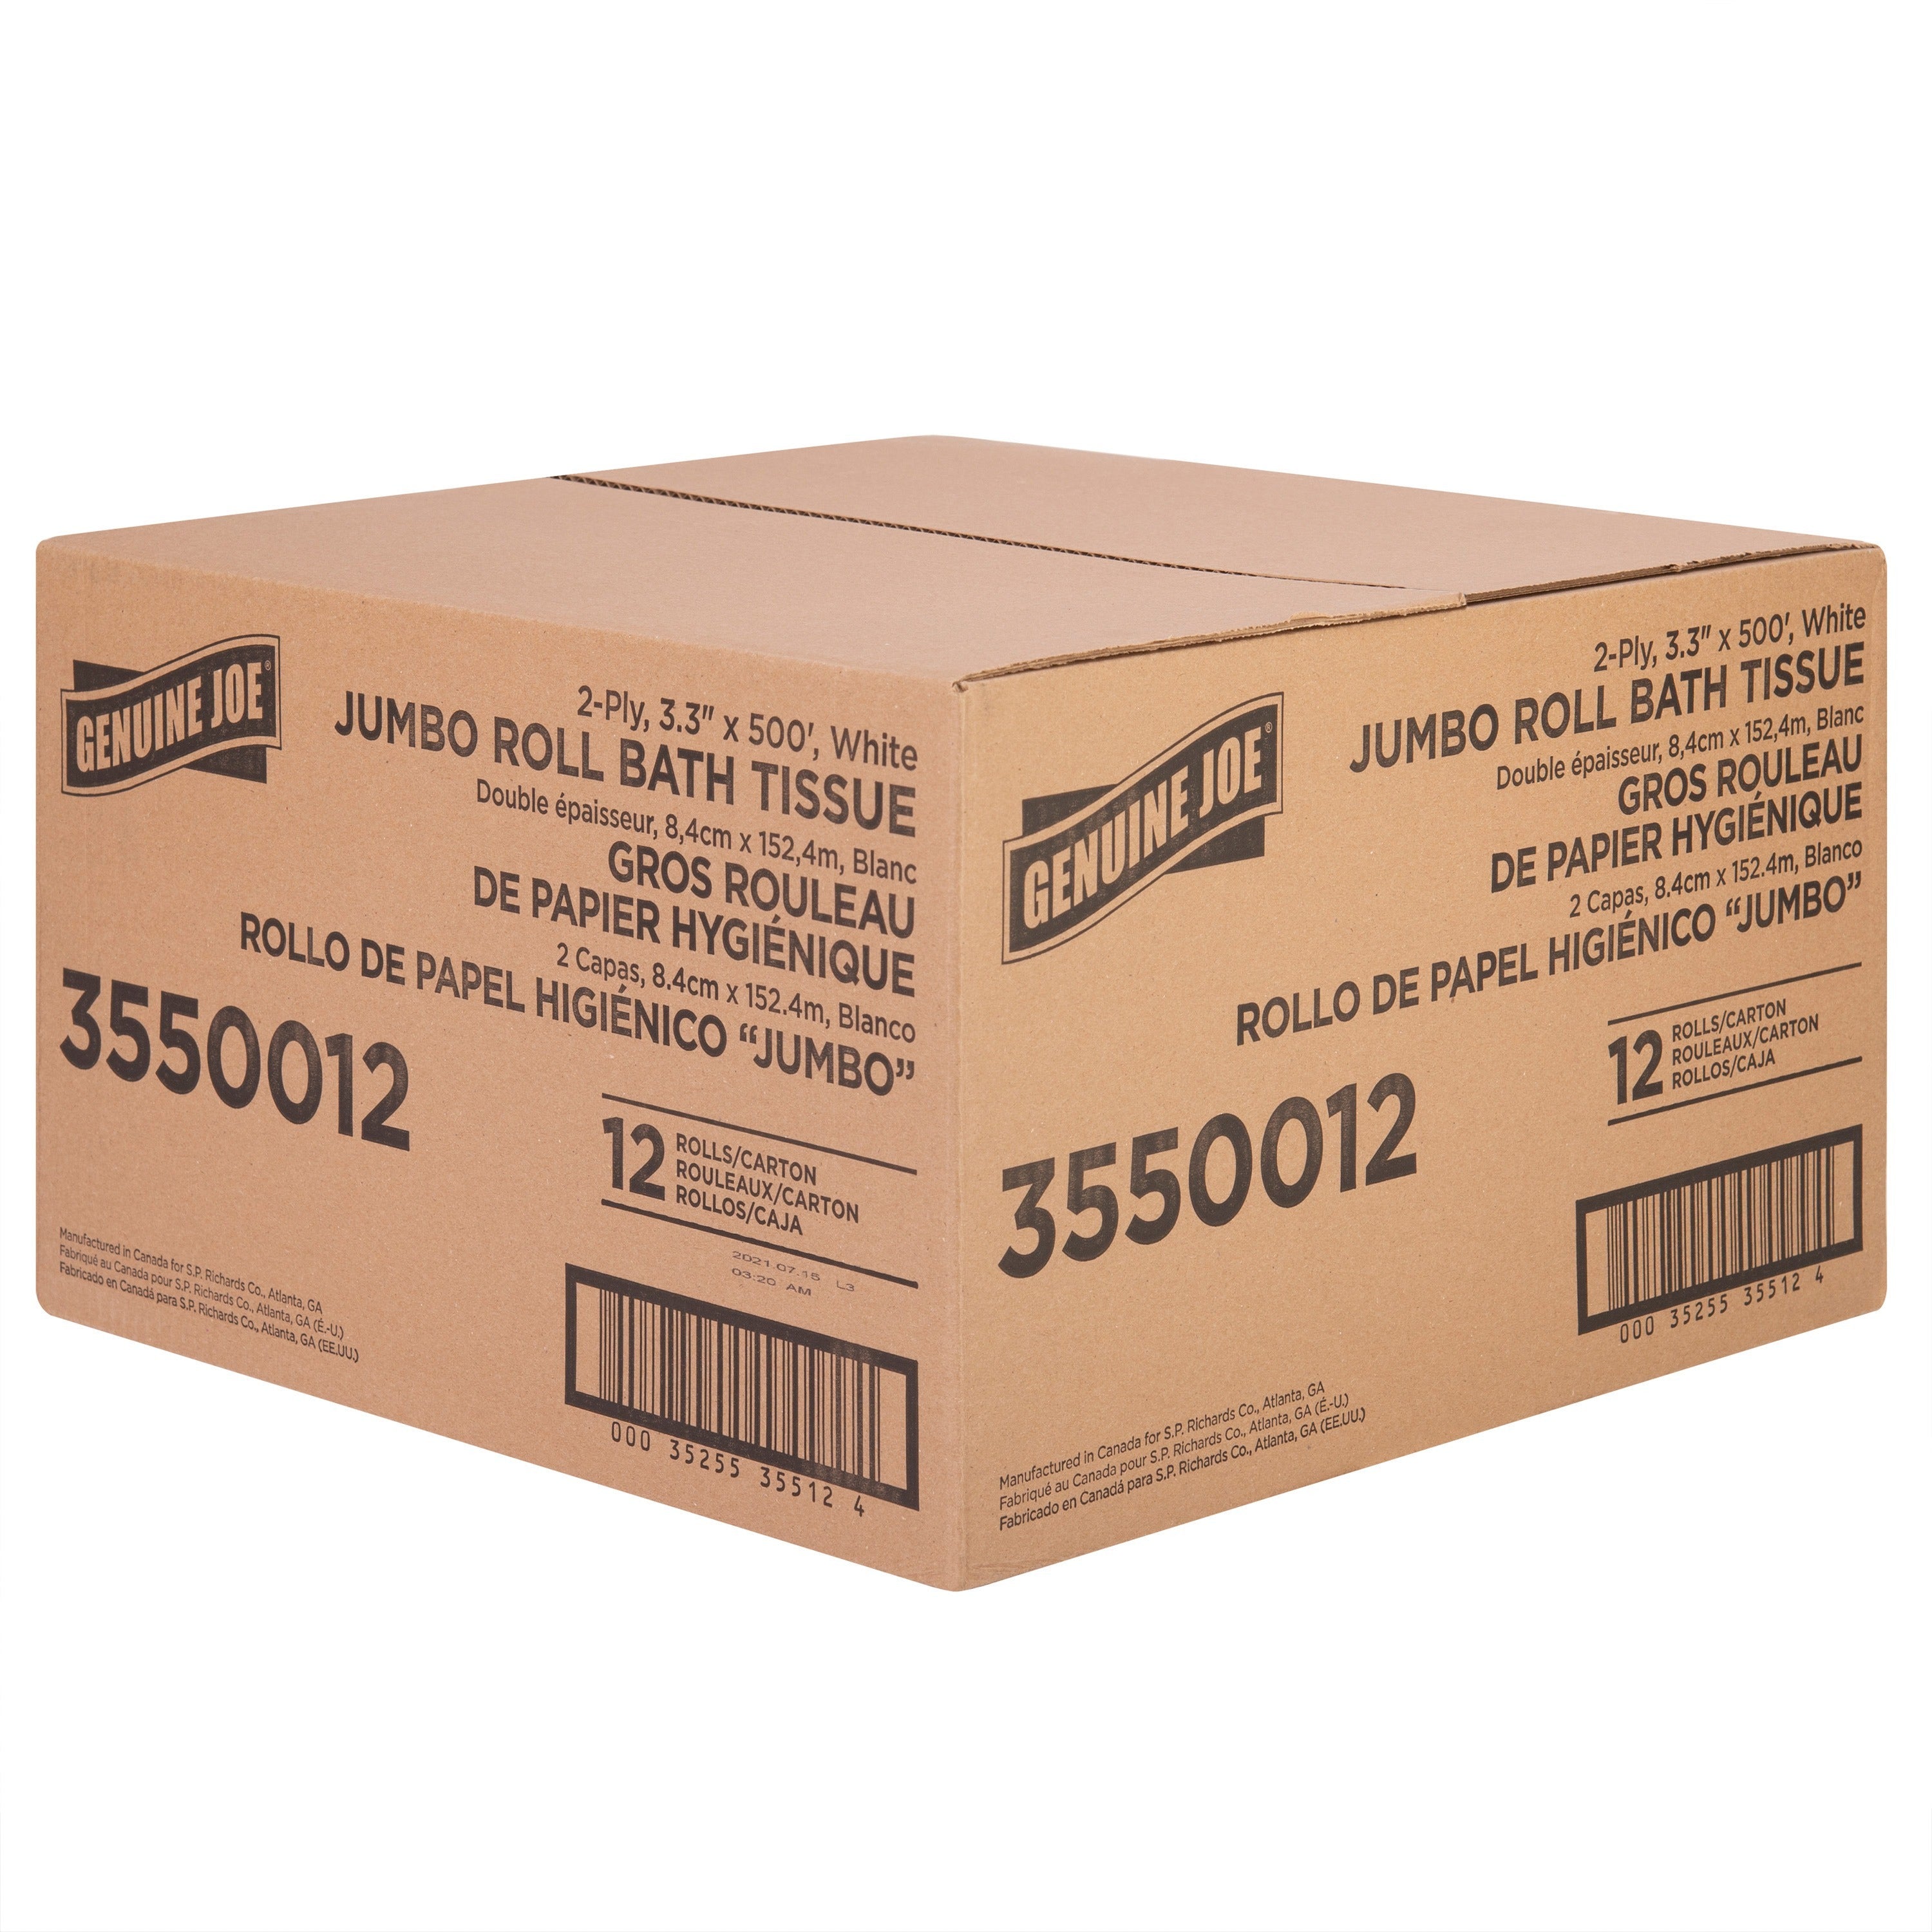 genuine-joe-jumbo-jr-dispenser-bath-tissue-roll-2-ply-330-x-500-ft-888-roll-diameter-white-fiber-sewer-safe-septic-safe-for-bathroom-12-carton_gjo3550012 - 4